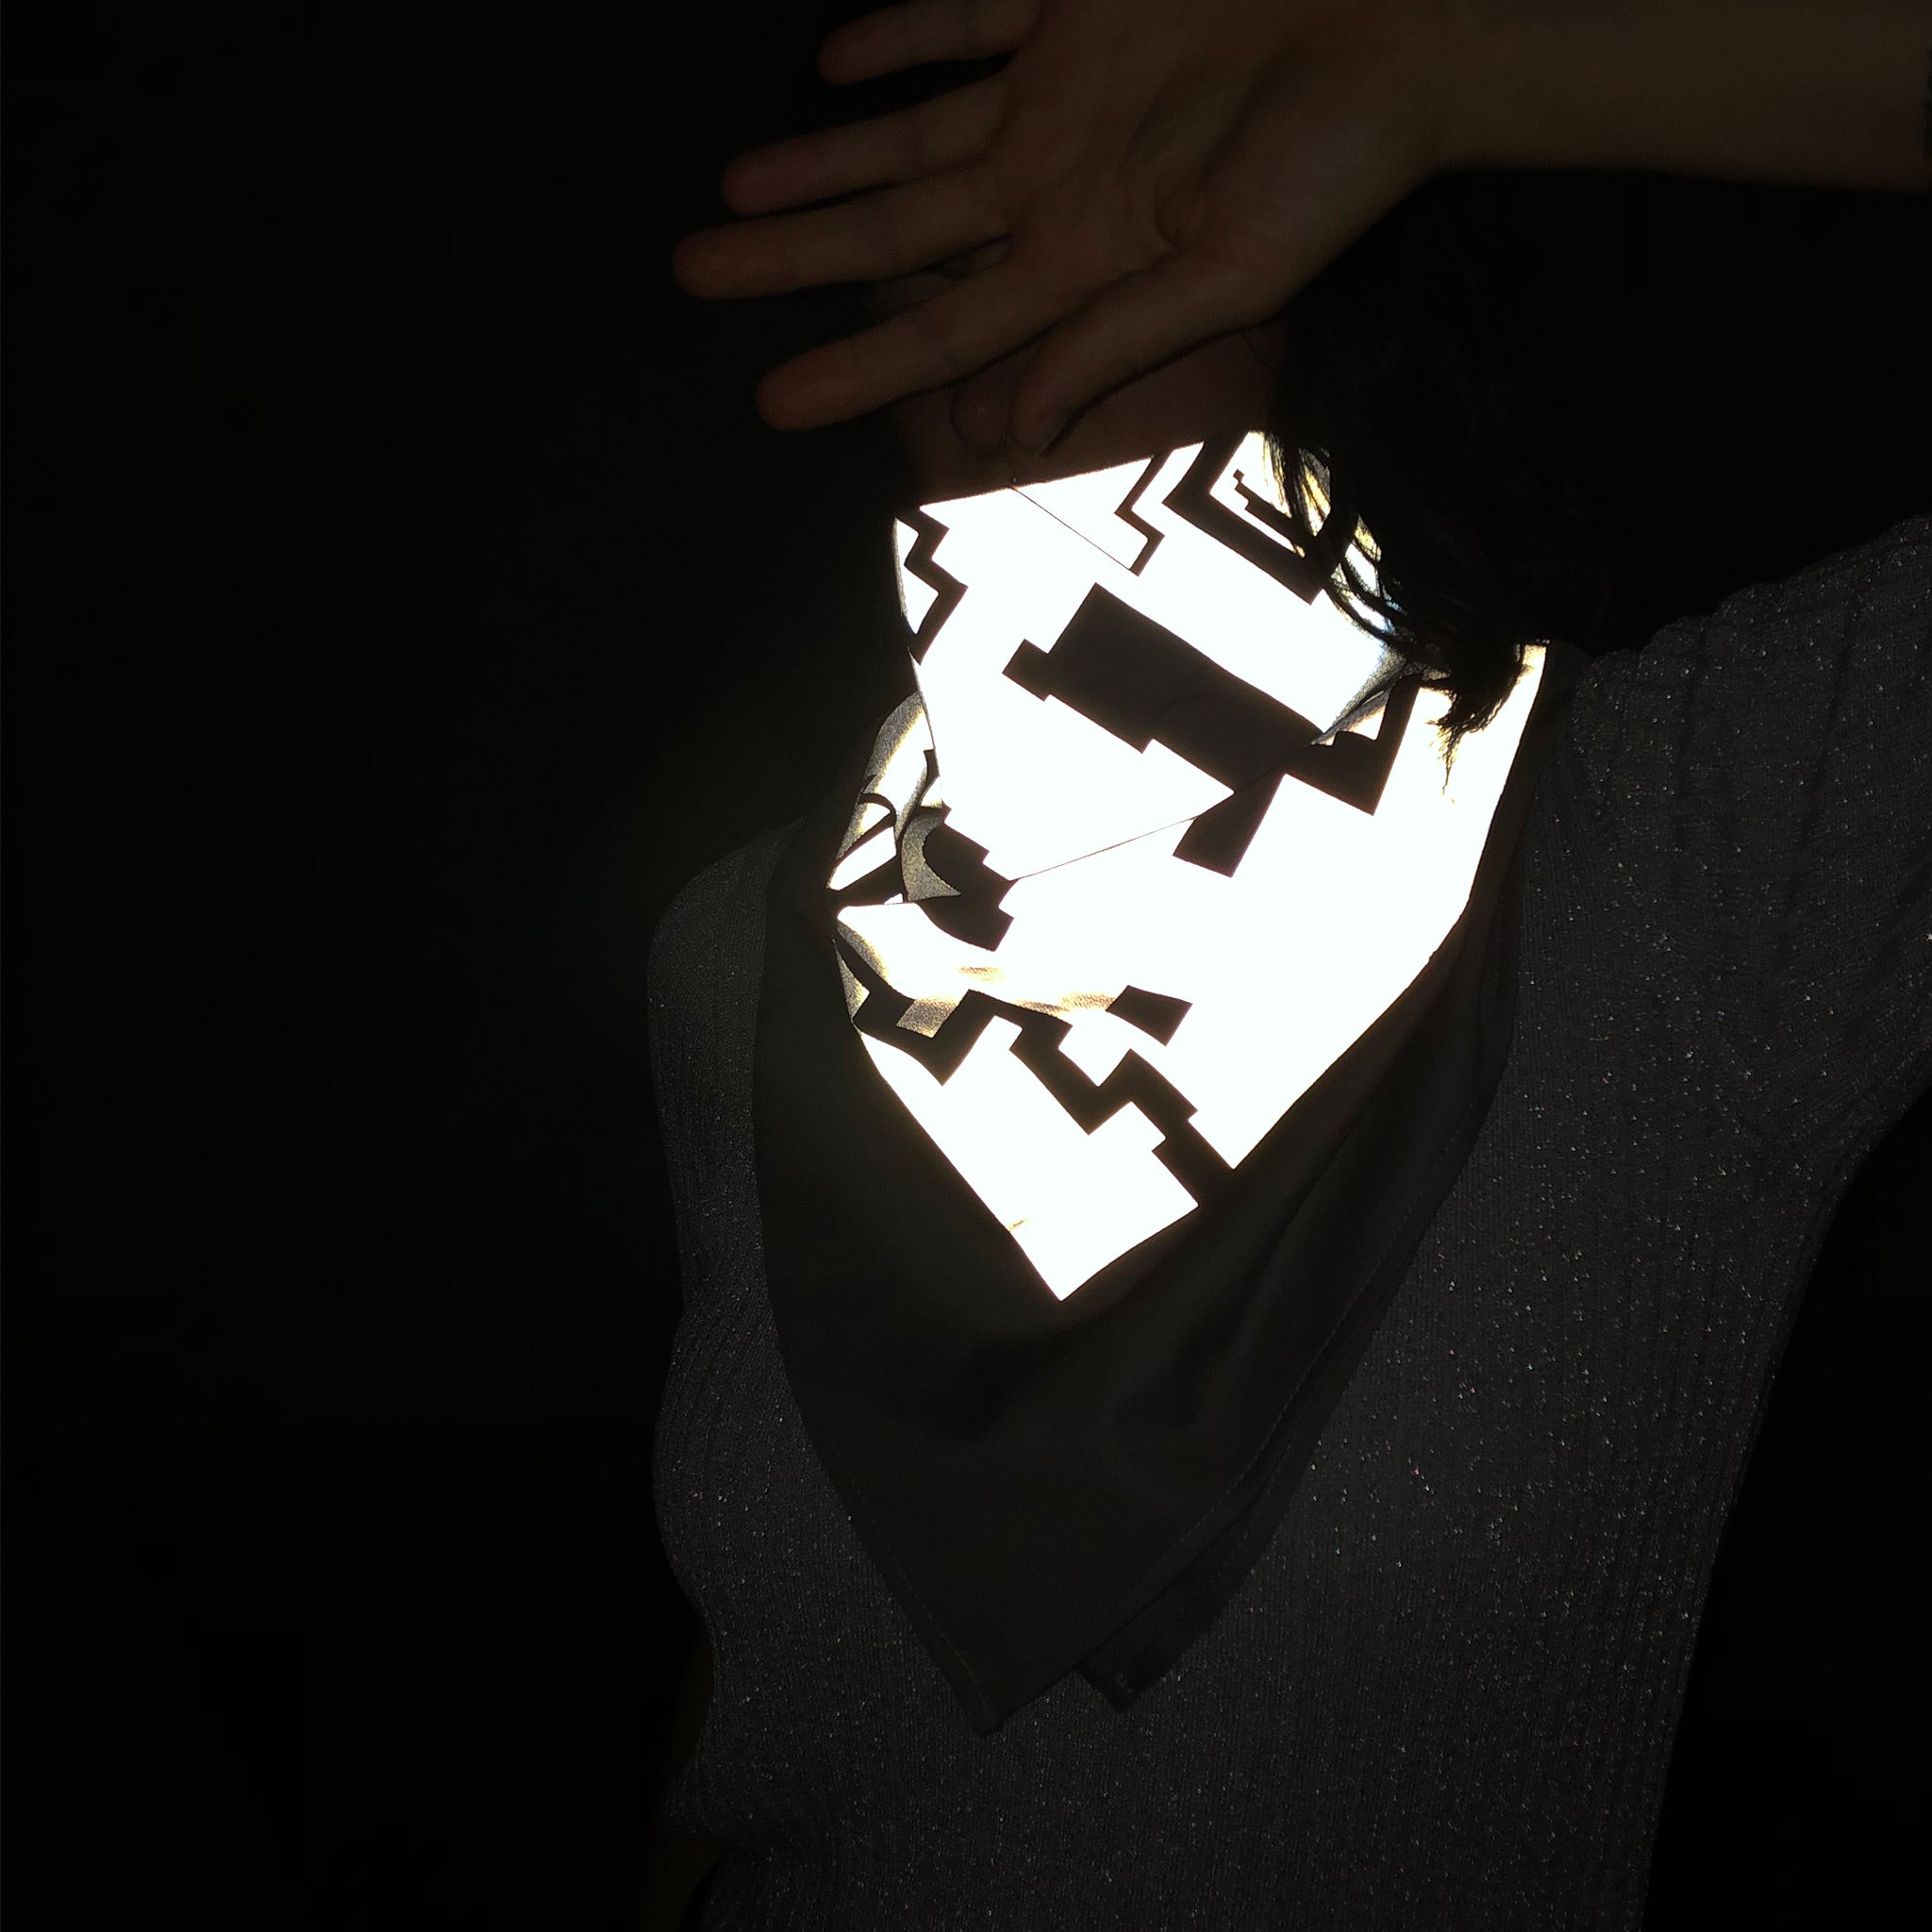 Eine Frau trägt ein großes Bandana um den Hals. Das Foto wurde in einer dunklen Umgebung mit Blitzlicht aufgenommen, es ist die Reflektion durch das Tuch zu sehen.